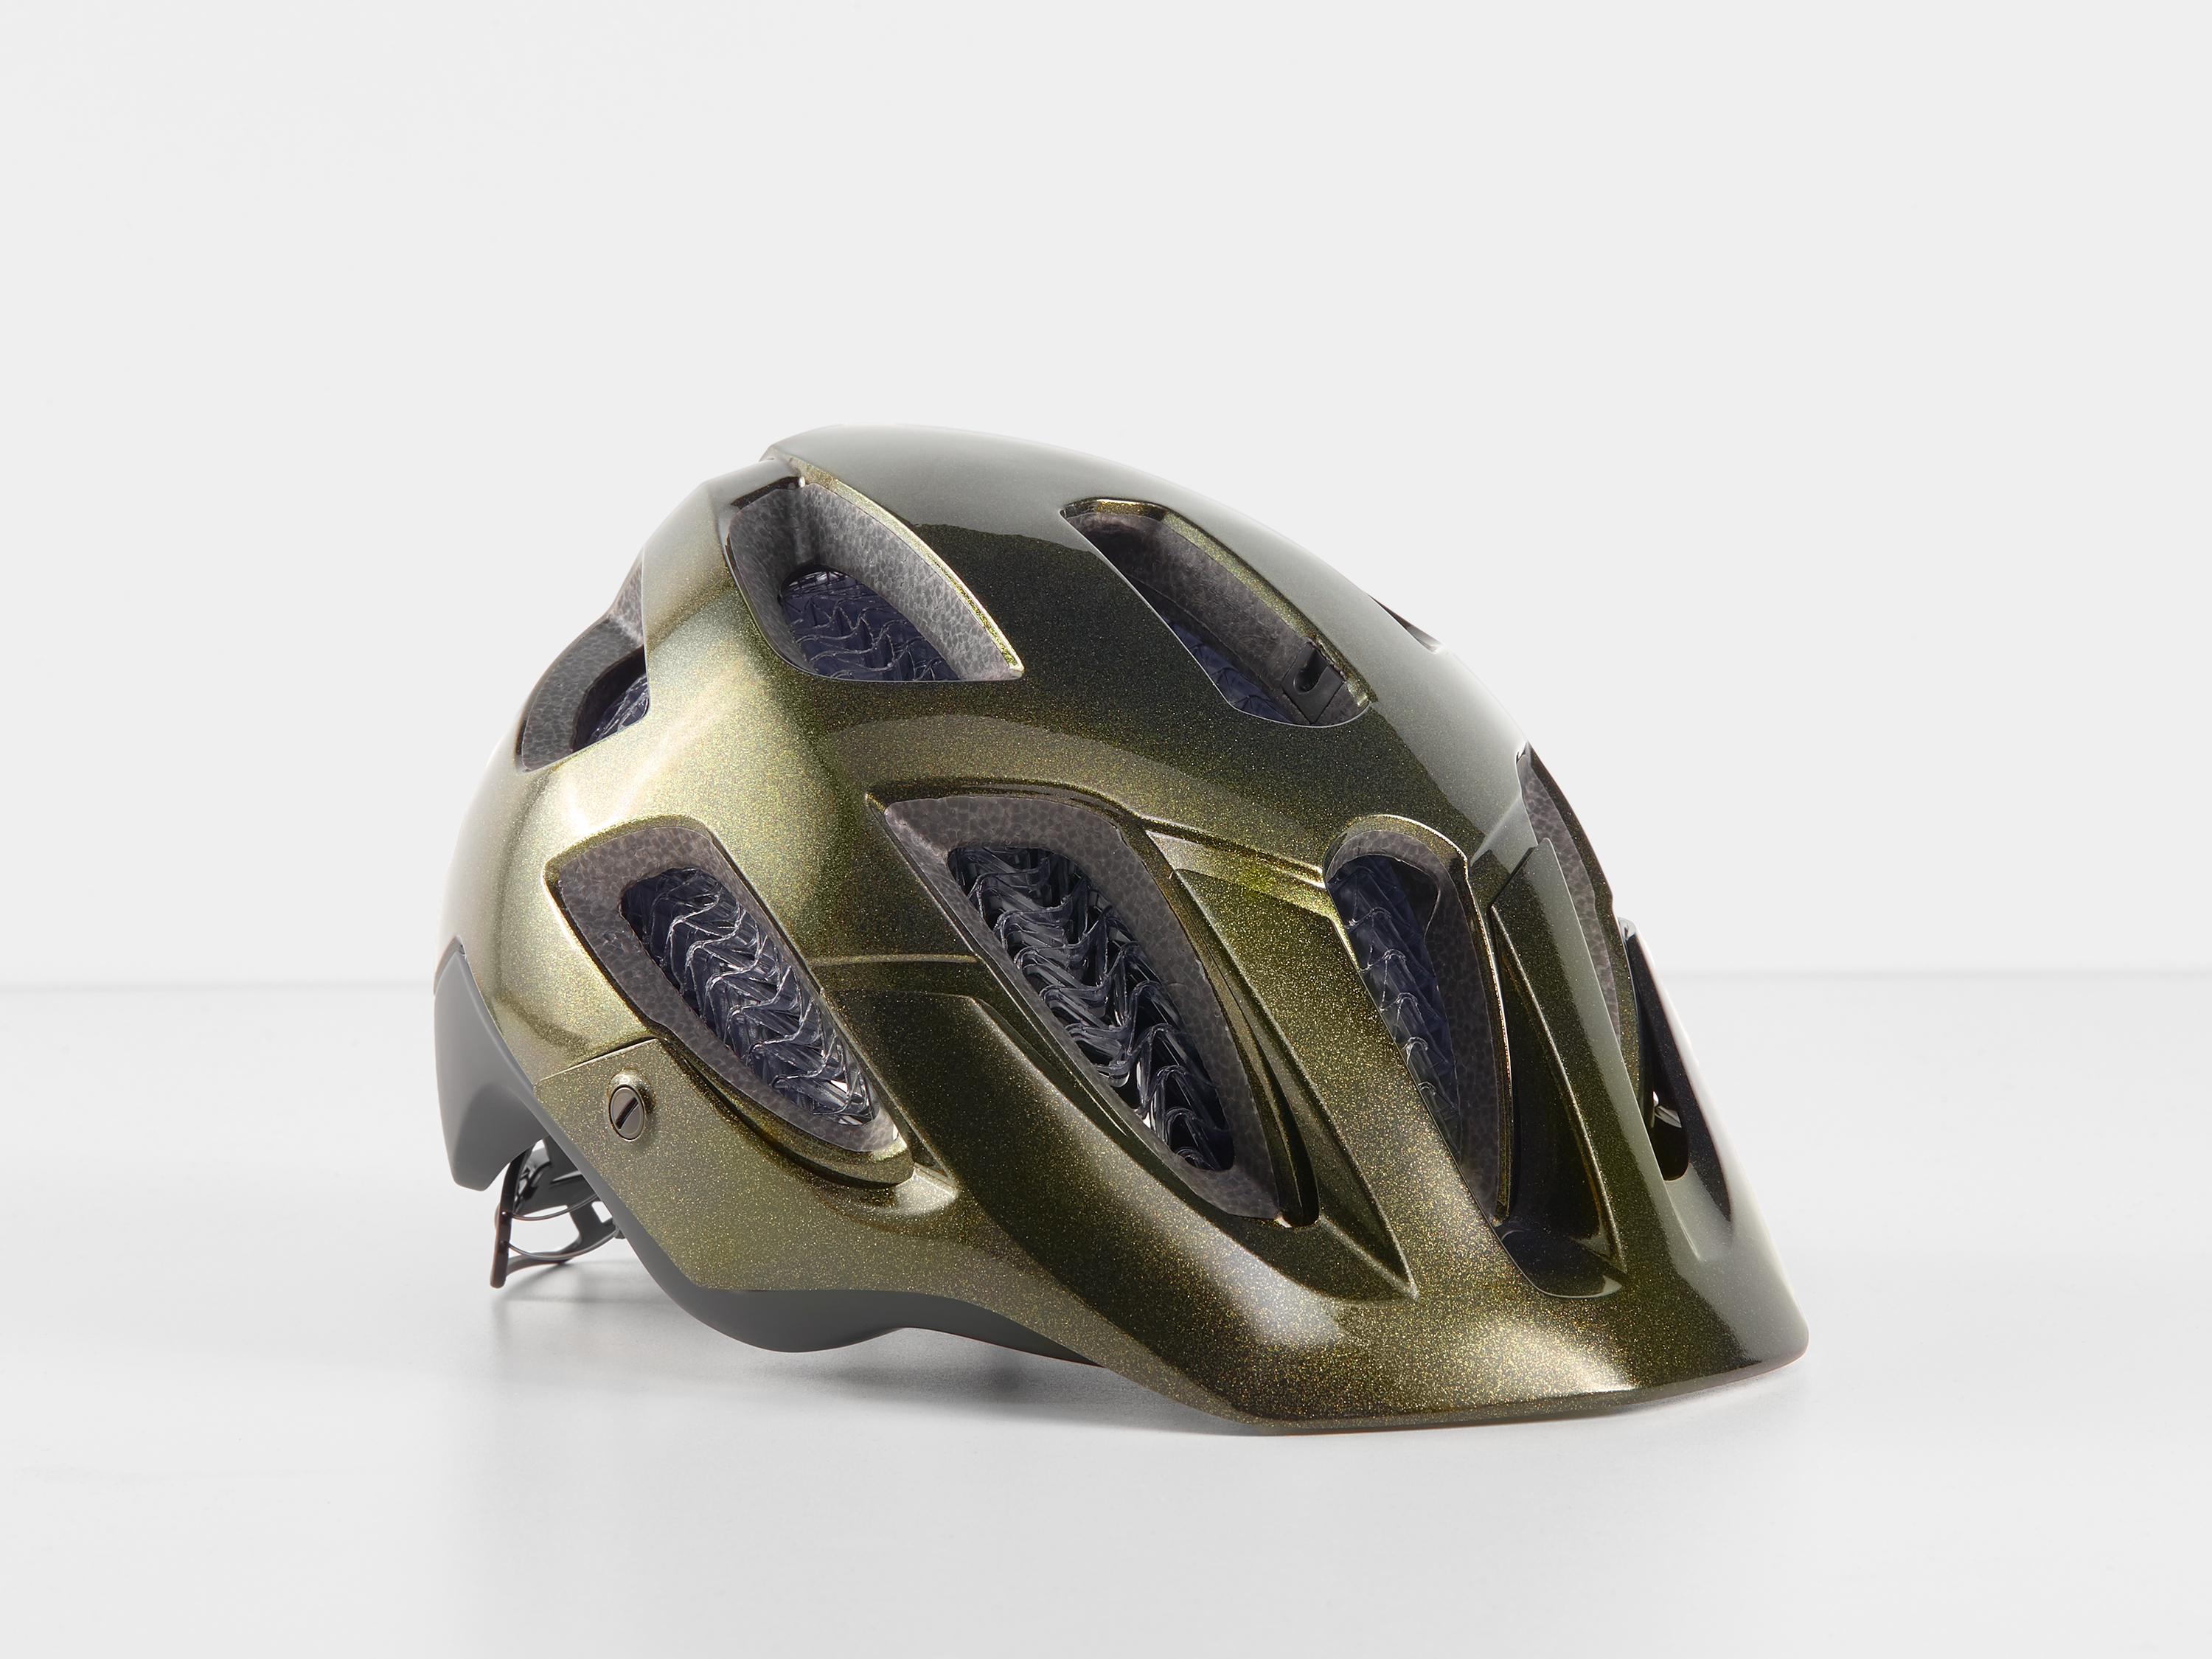 trek bicycle helmets